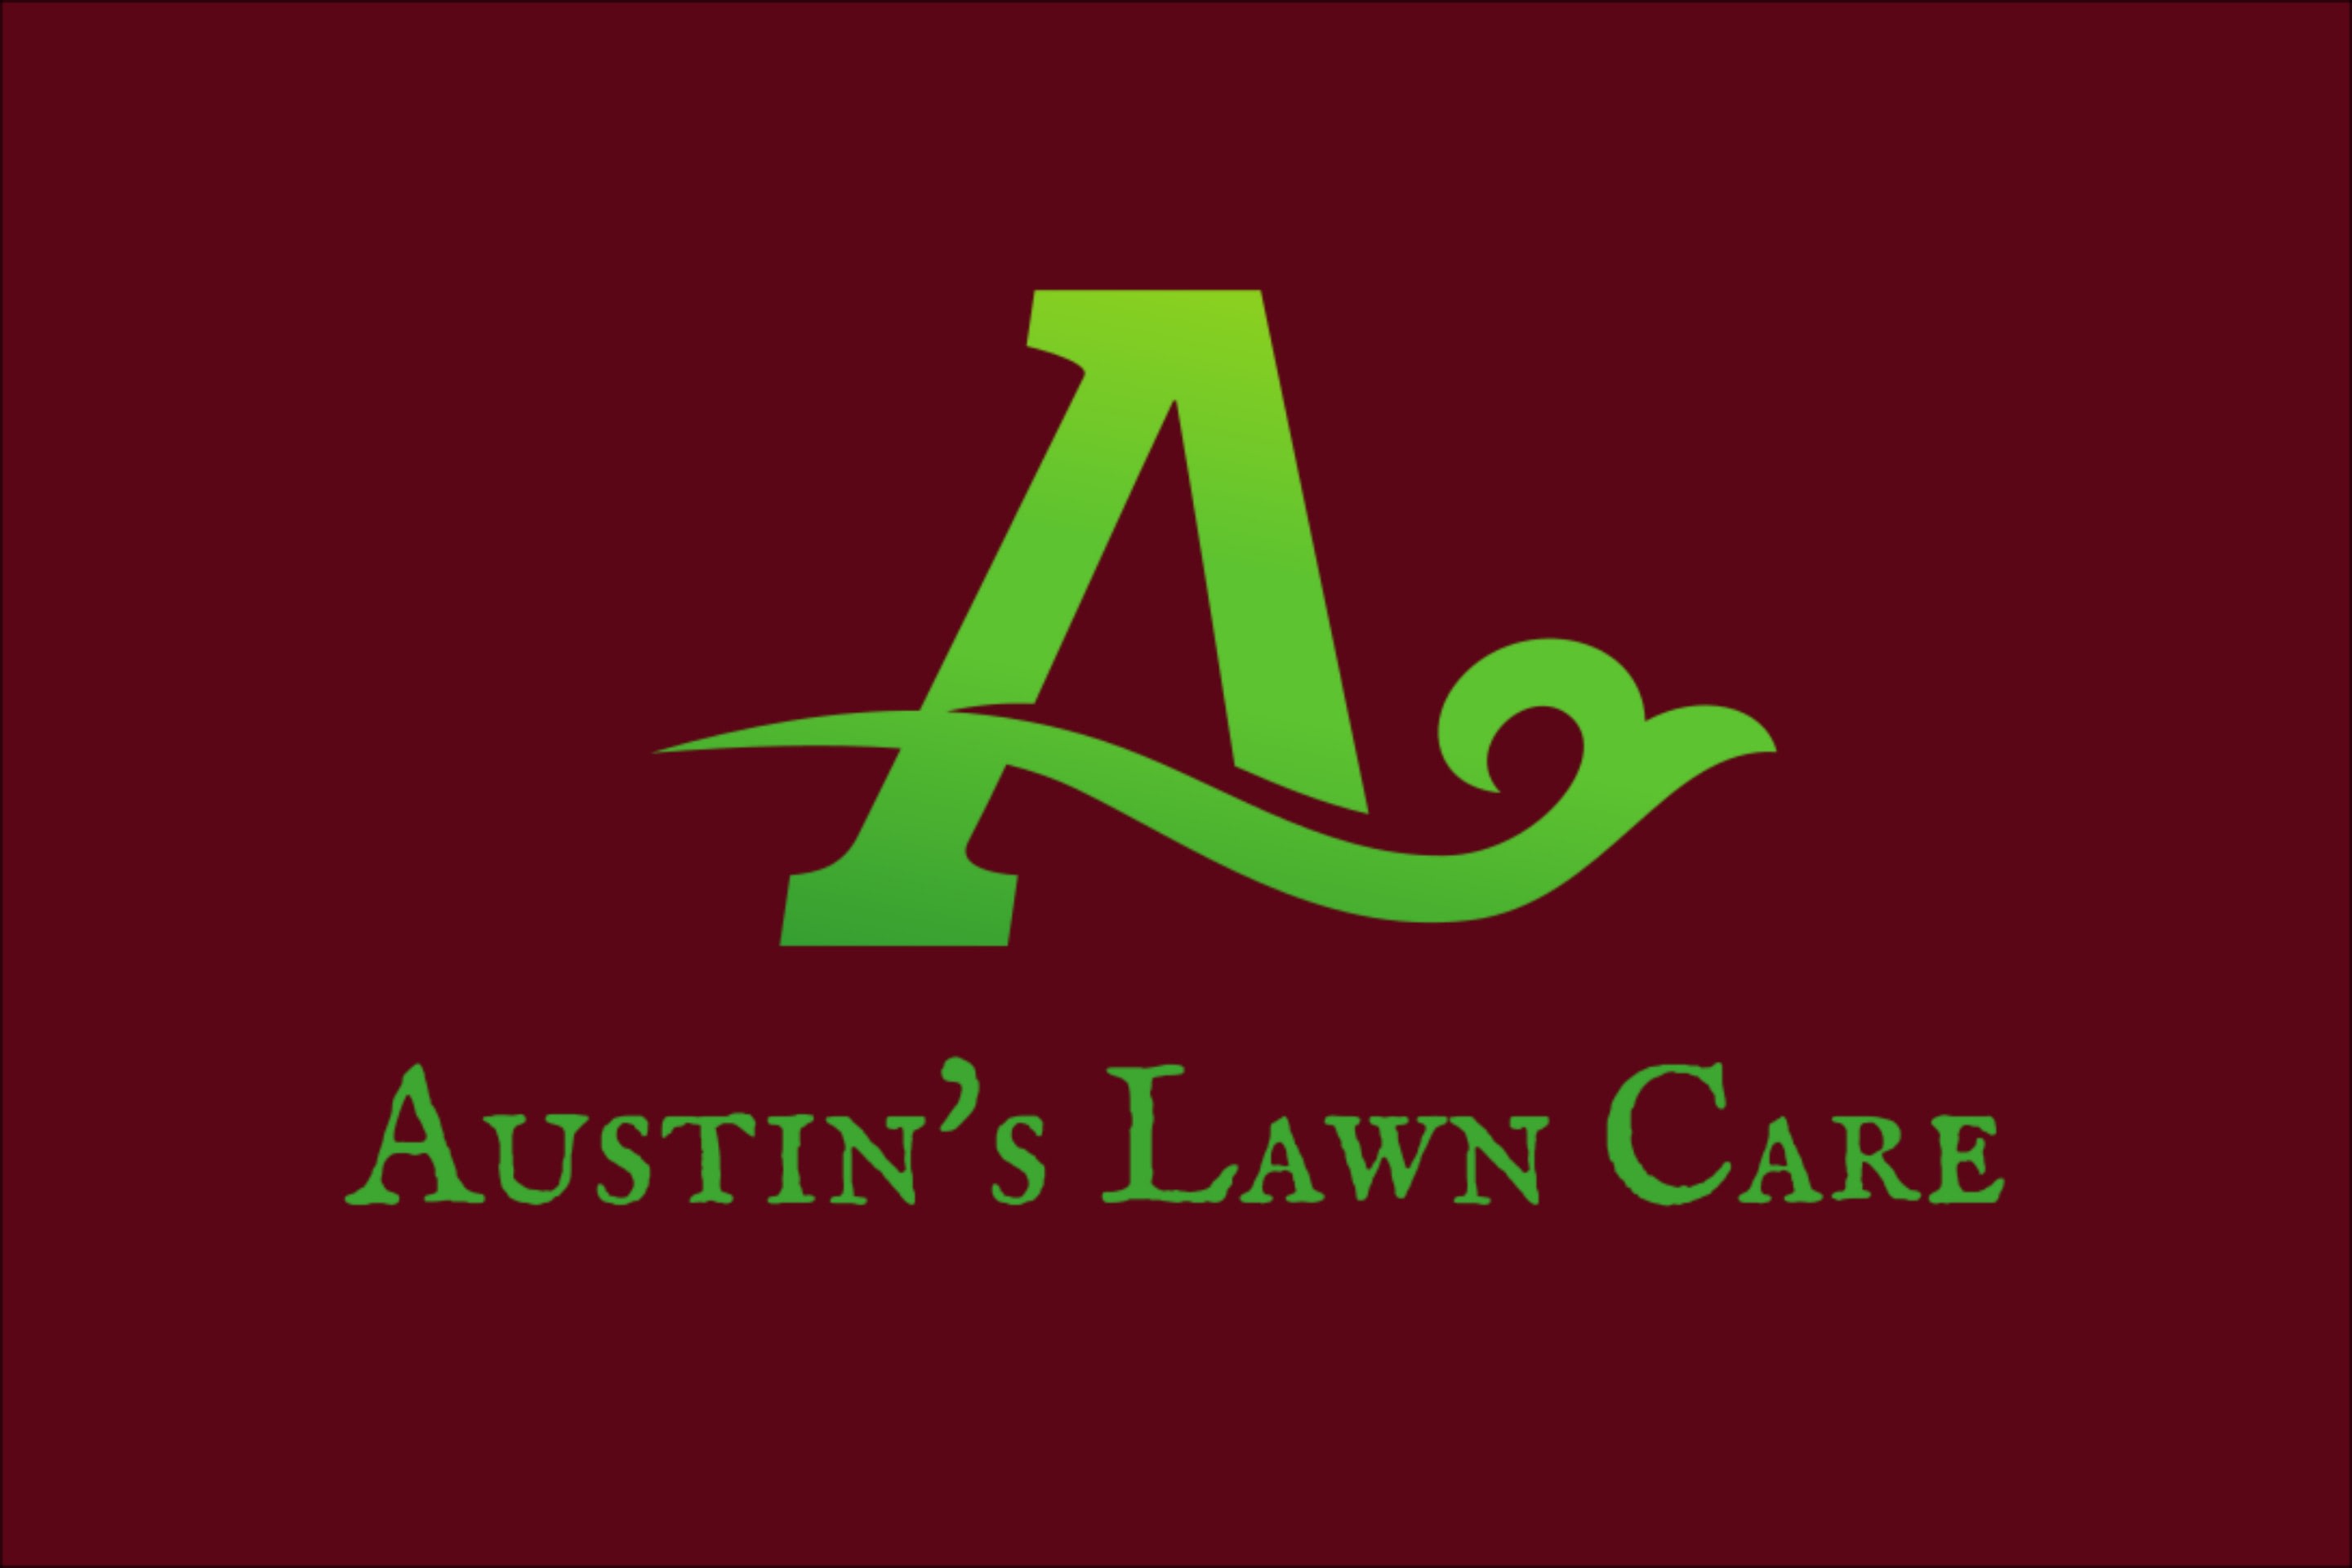 Austin's Lawn Care